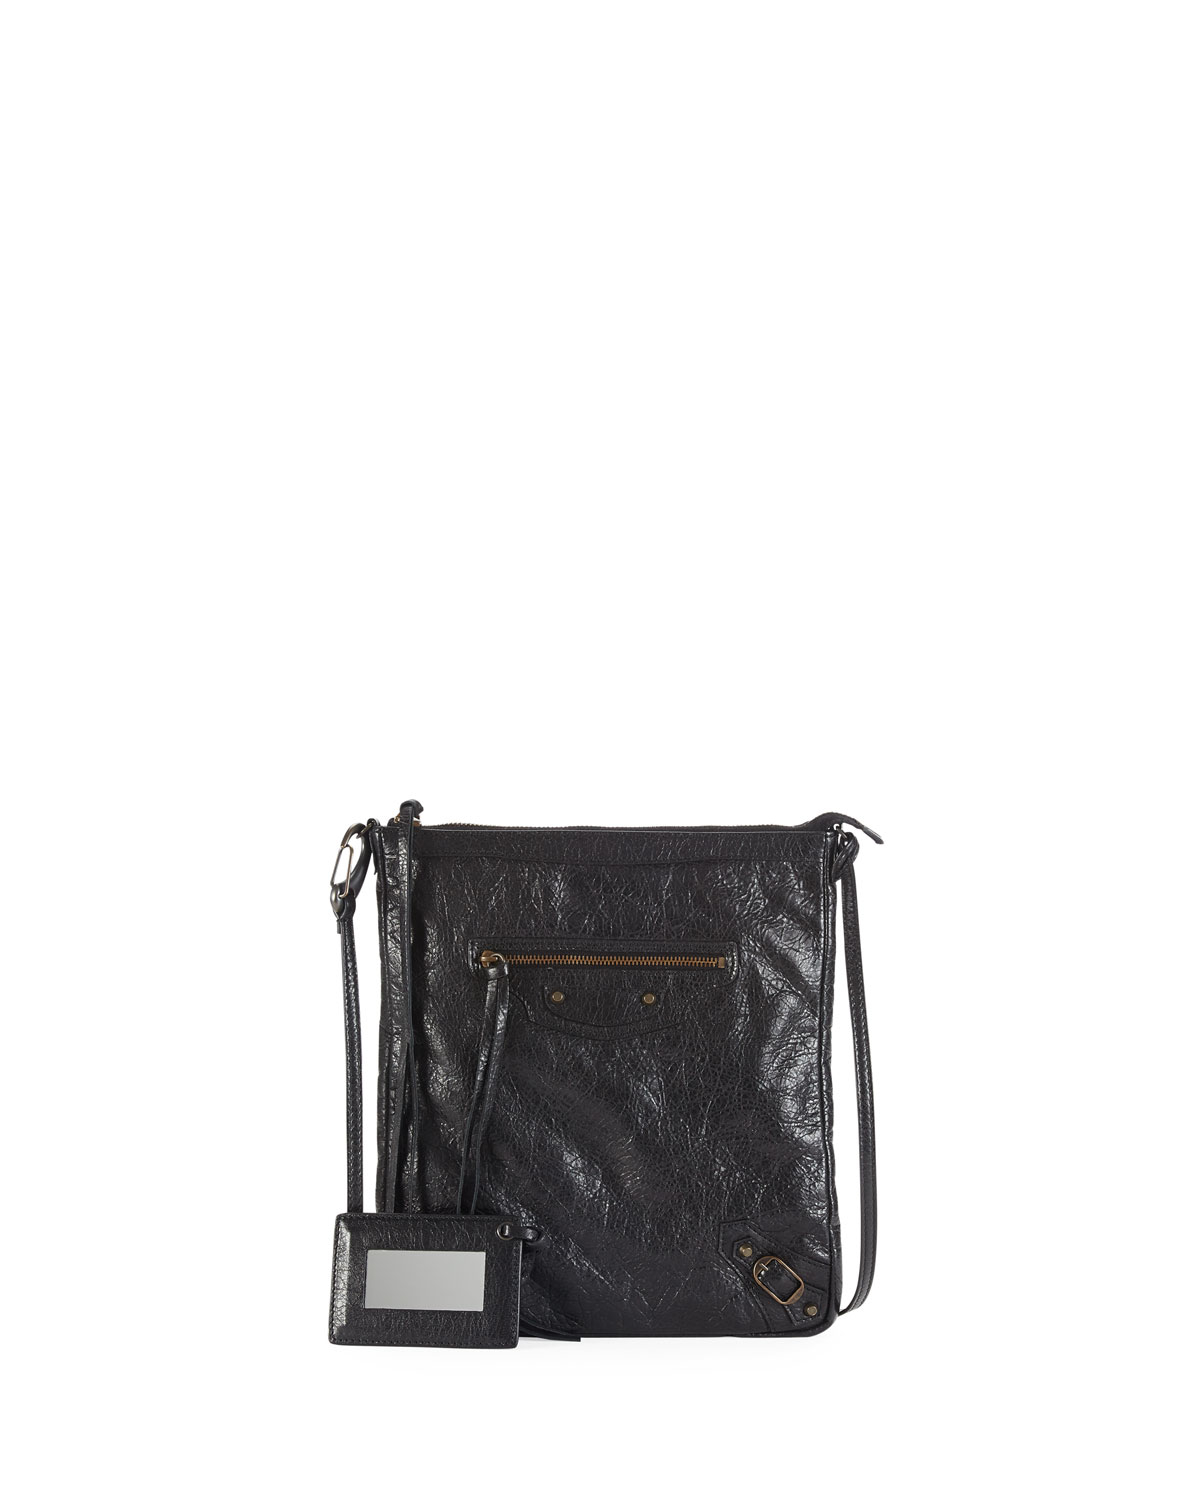 Balenciaga Classic Flat Crossbody Bag in Black | Lyst